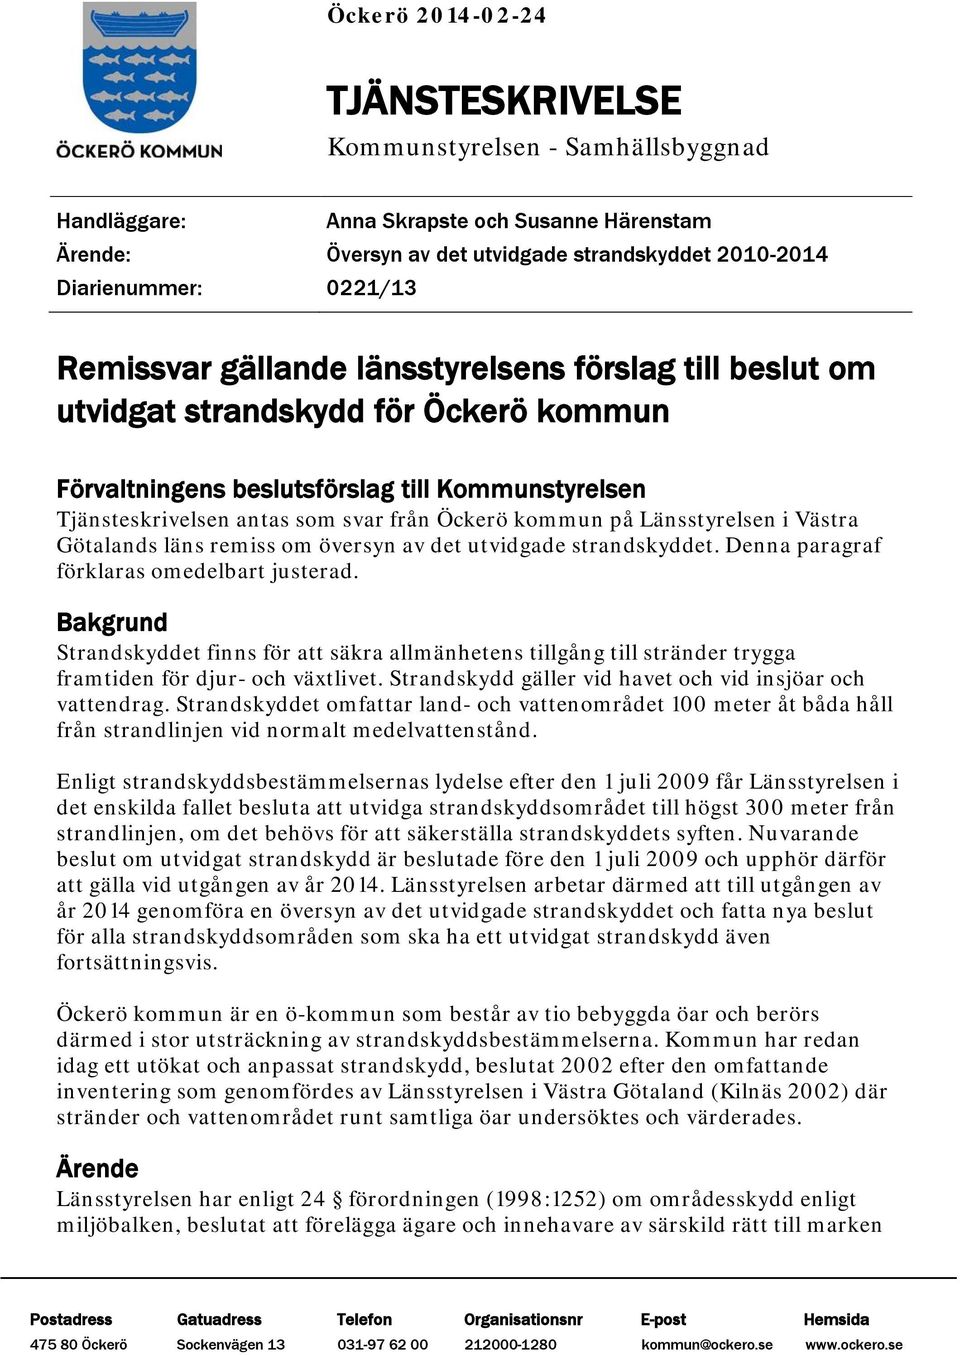 på Länsstyrelsen i Västra Götalands läns remiss om översyn av det utvidgade strandskyddet. Denna paragraf förklaras omedelbart justerad.